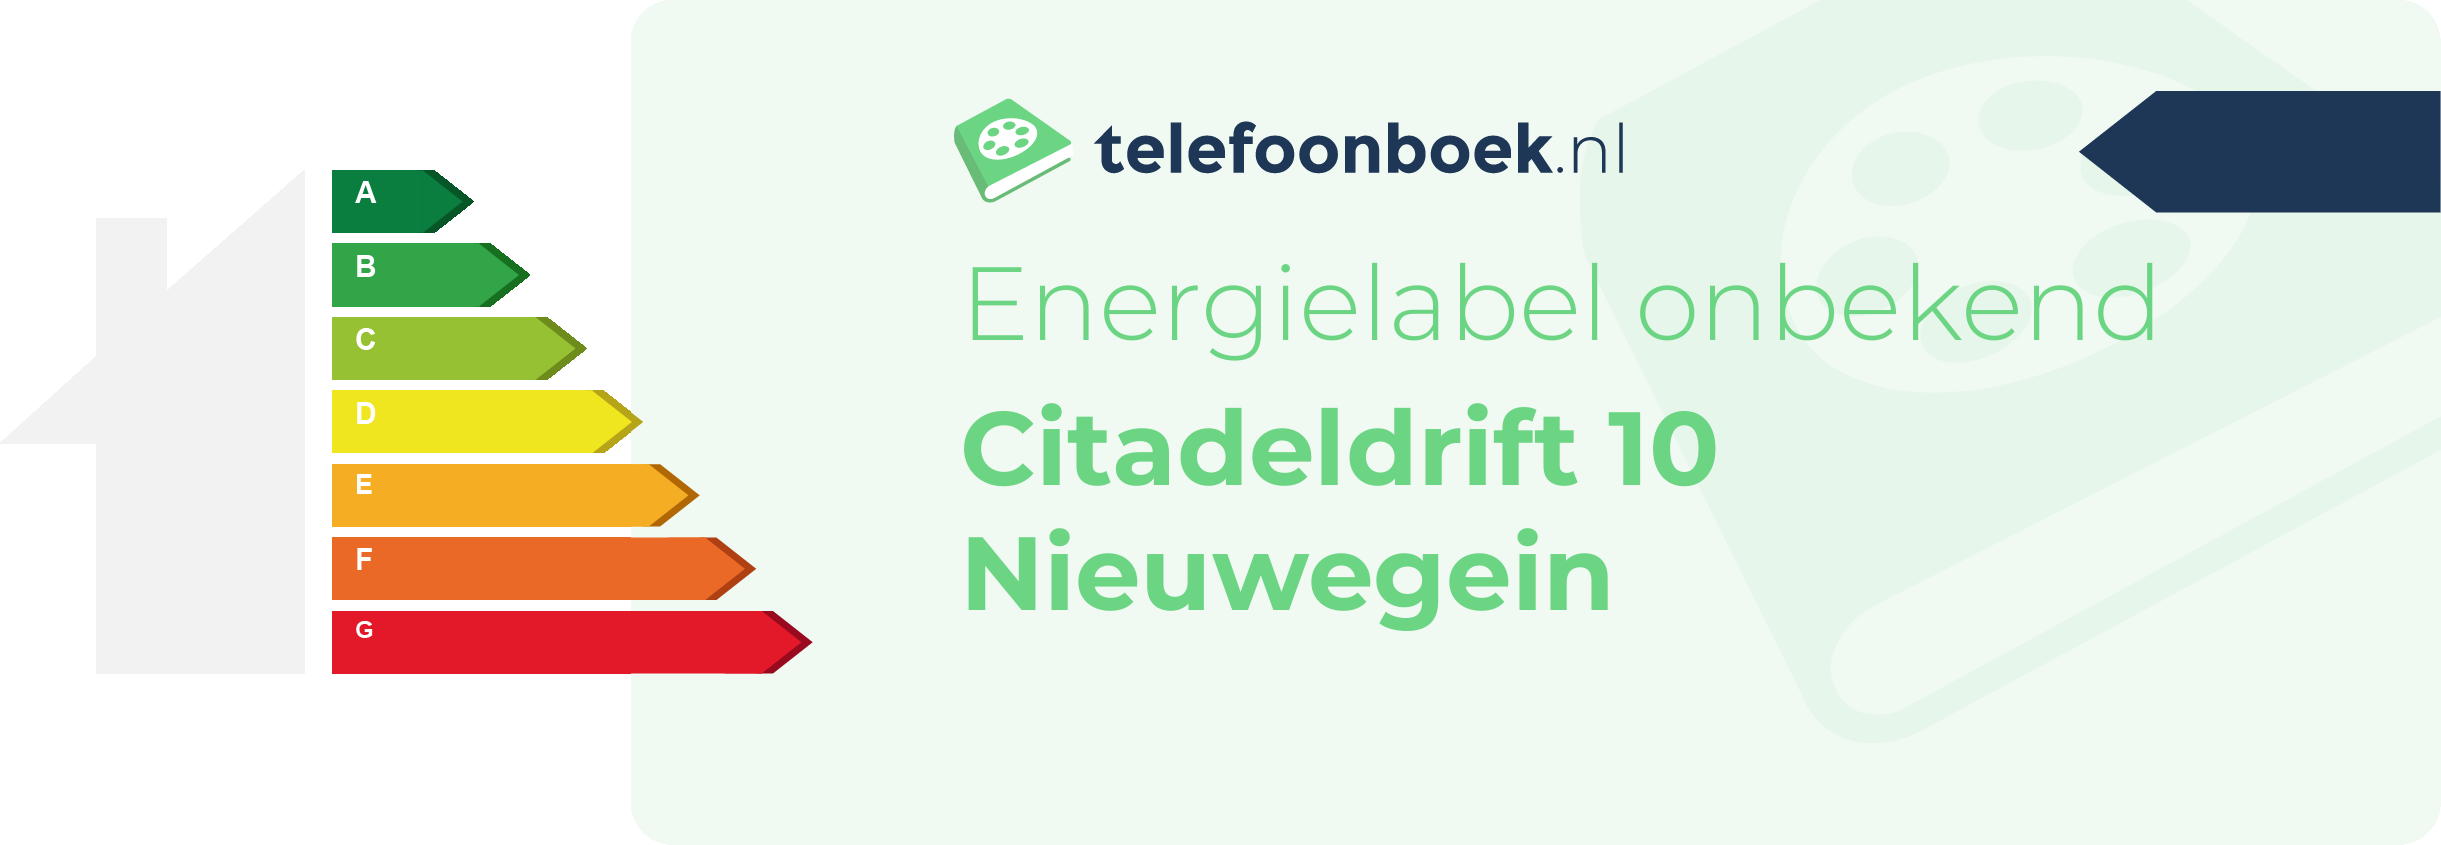 Energielabel Citadeldrift 10 Nieuwegein